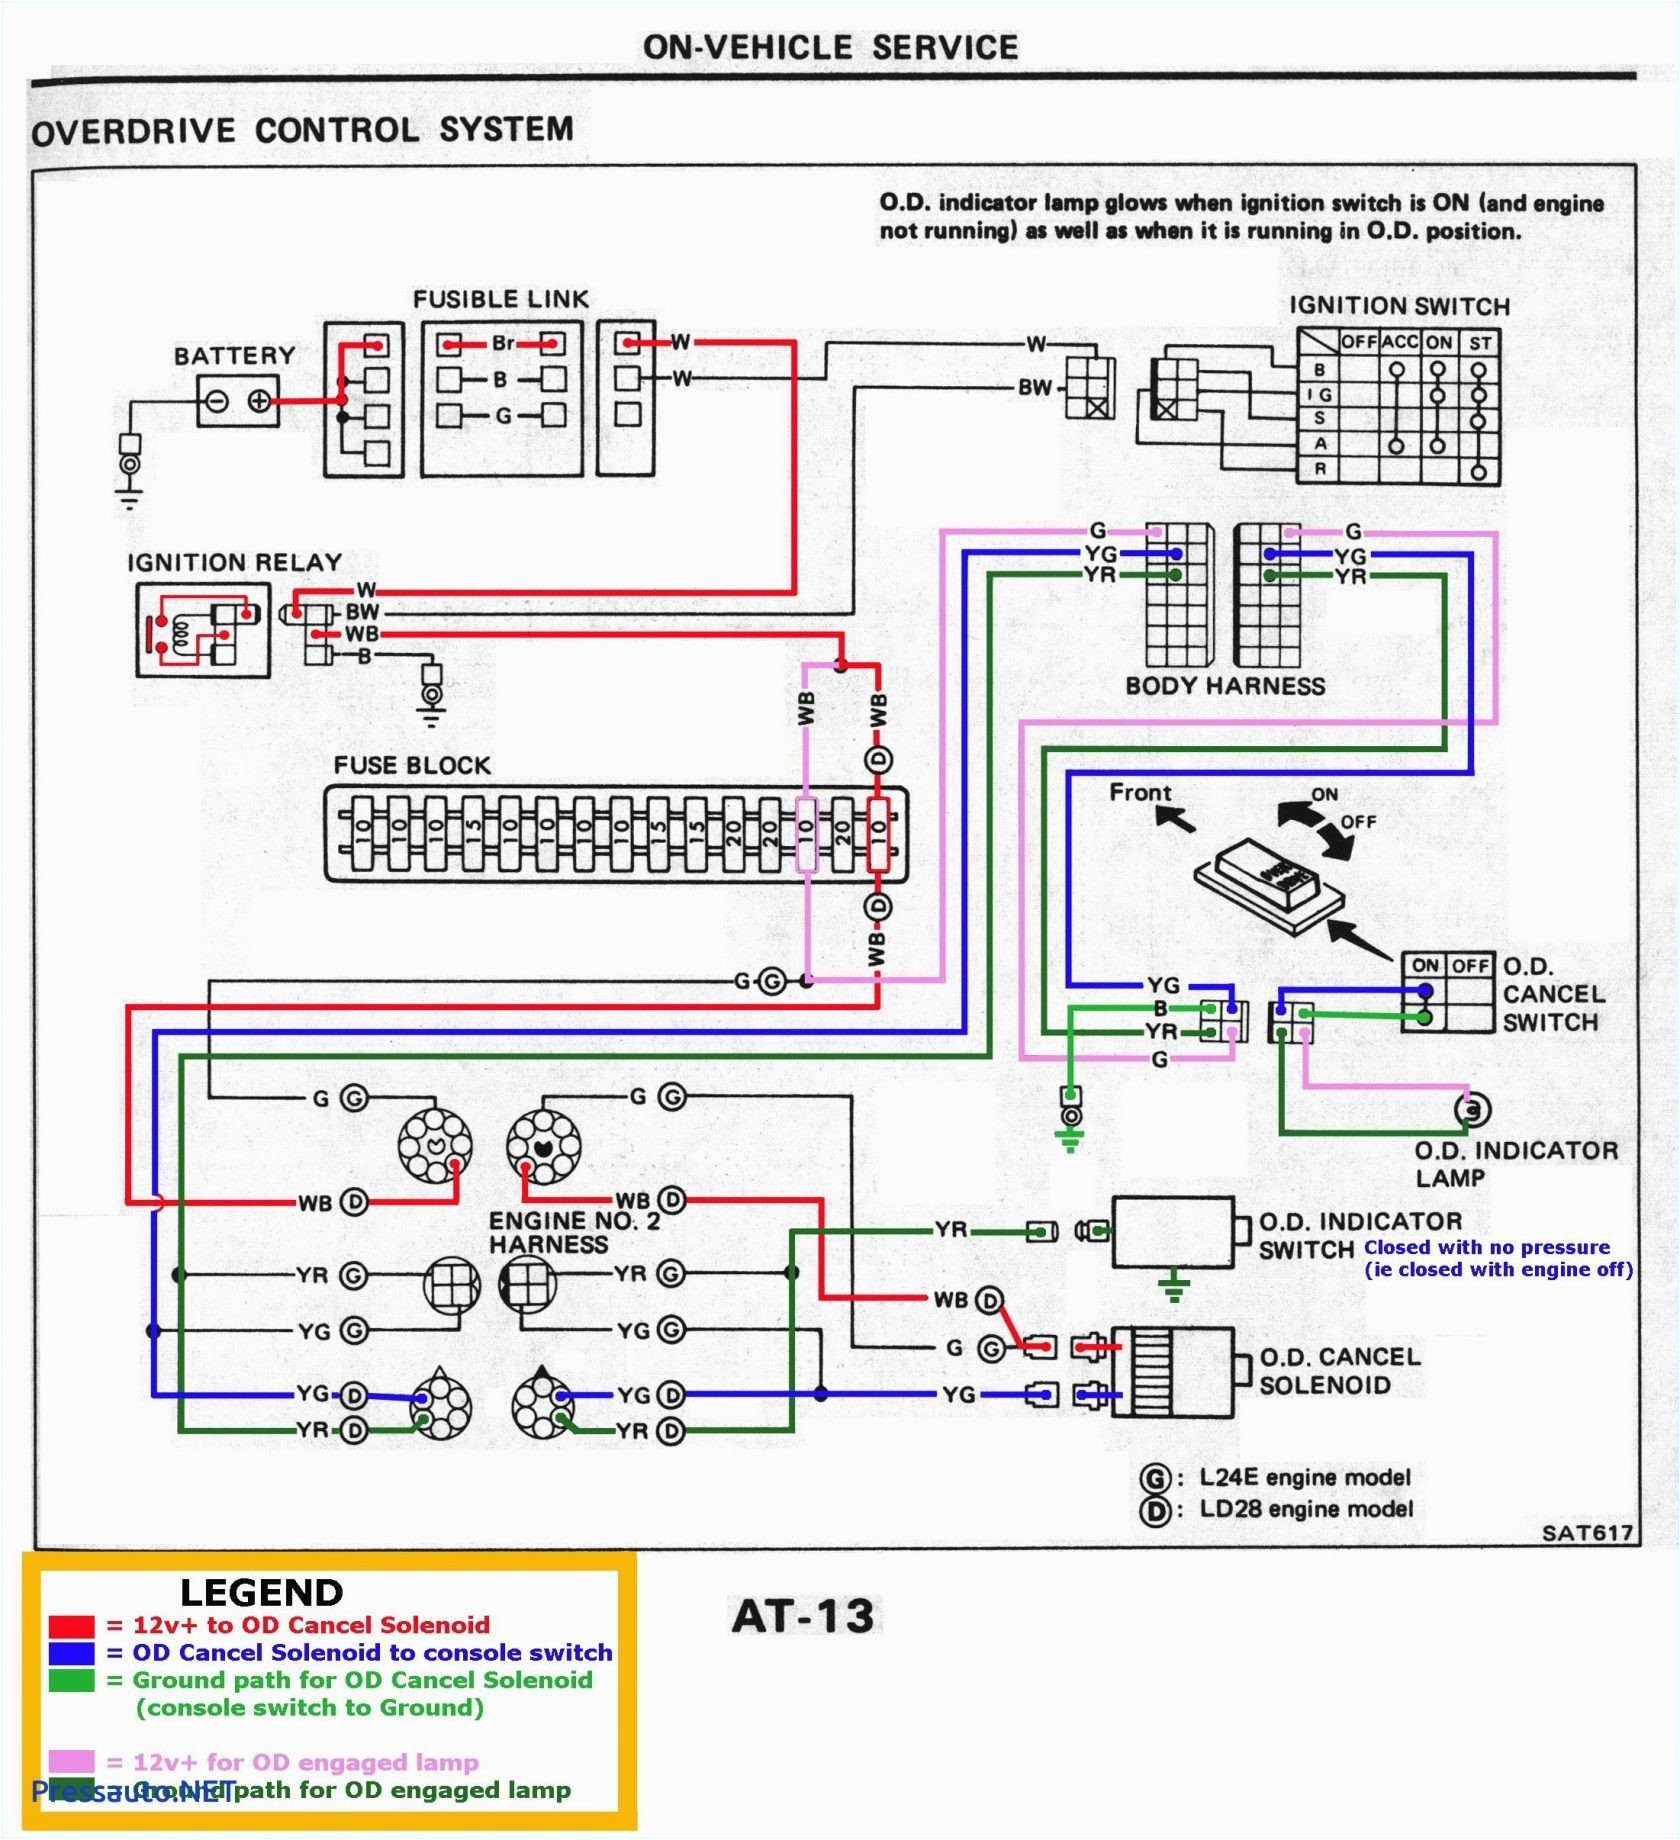 2001 Pontiac Grand Am Wiring Diagram 2004 Grand Am Wiring Diagram Wiring Diagram Technic